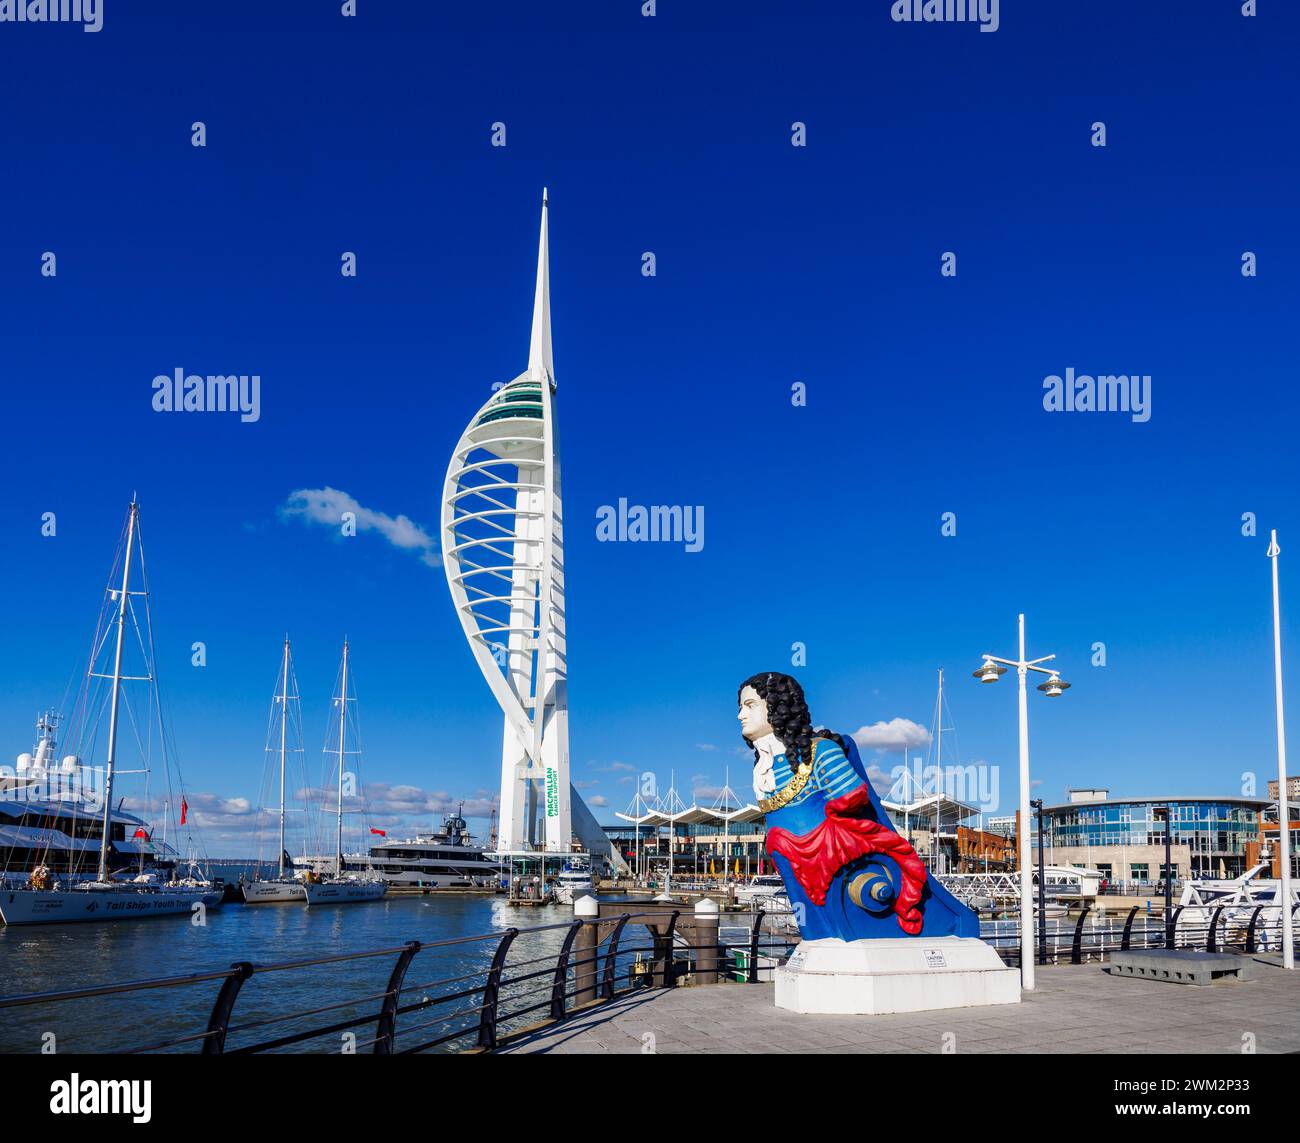 Tête de figurine colorée du HMS Marlborough et de la Spinnaker Tower au point de vente de Gunwharf Quays à Portsmouth Harbour, Hampshire, sur la côte sud de l'Angleterre Banque D'Images